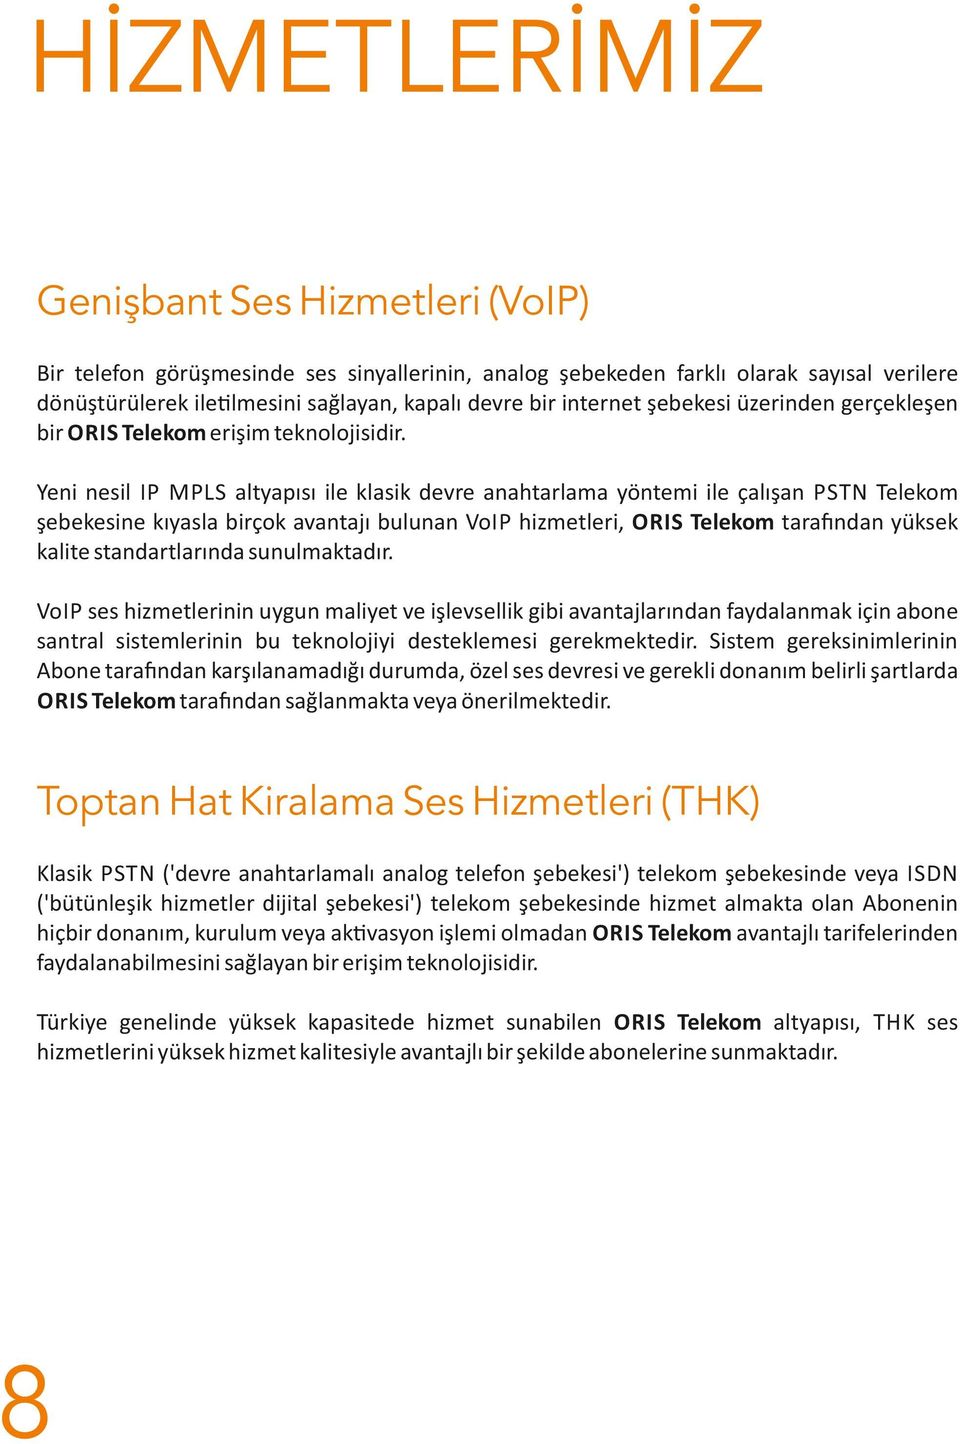 Yeni nesil IP MPLS altyapısı ile klasik devre anahtarlama yöntemi ile çalışan PSTN Telekom şebekesine kıyasla birçok avantajı bulunan VoIP hizmetleri, ORIS Telekom tara ndan yüksek kalite